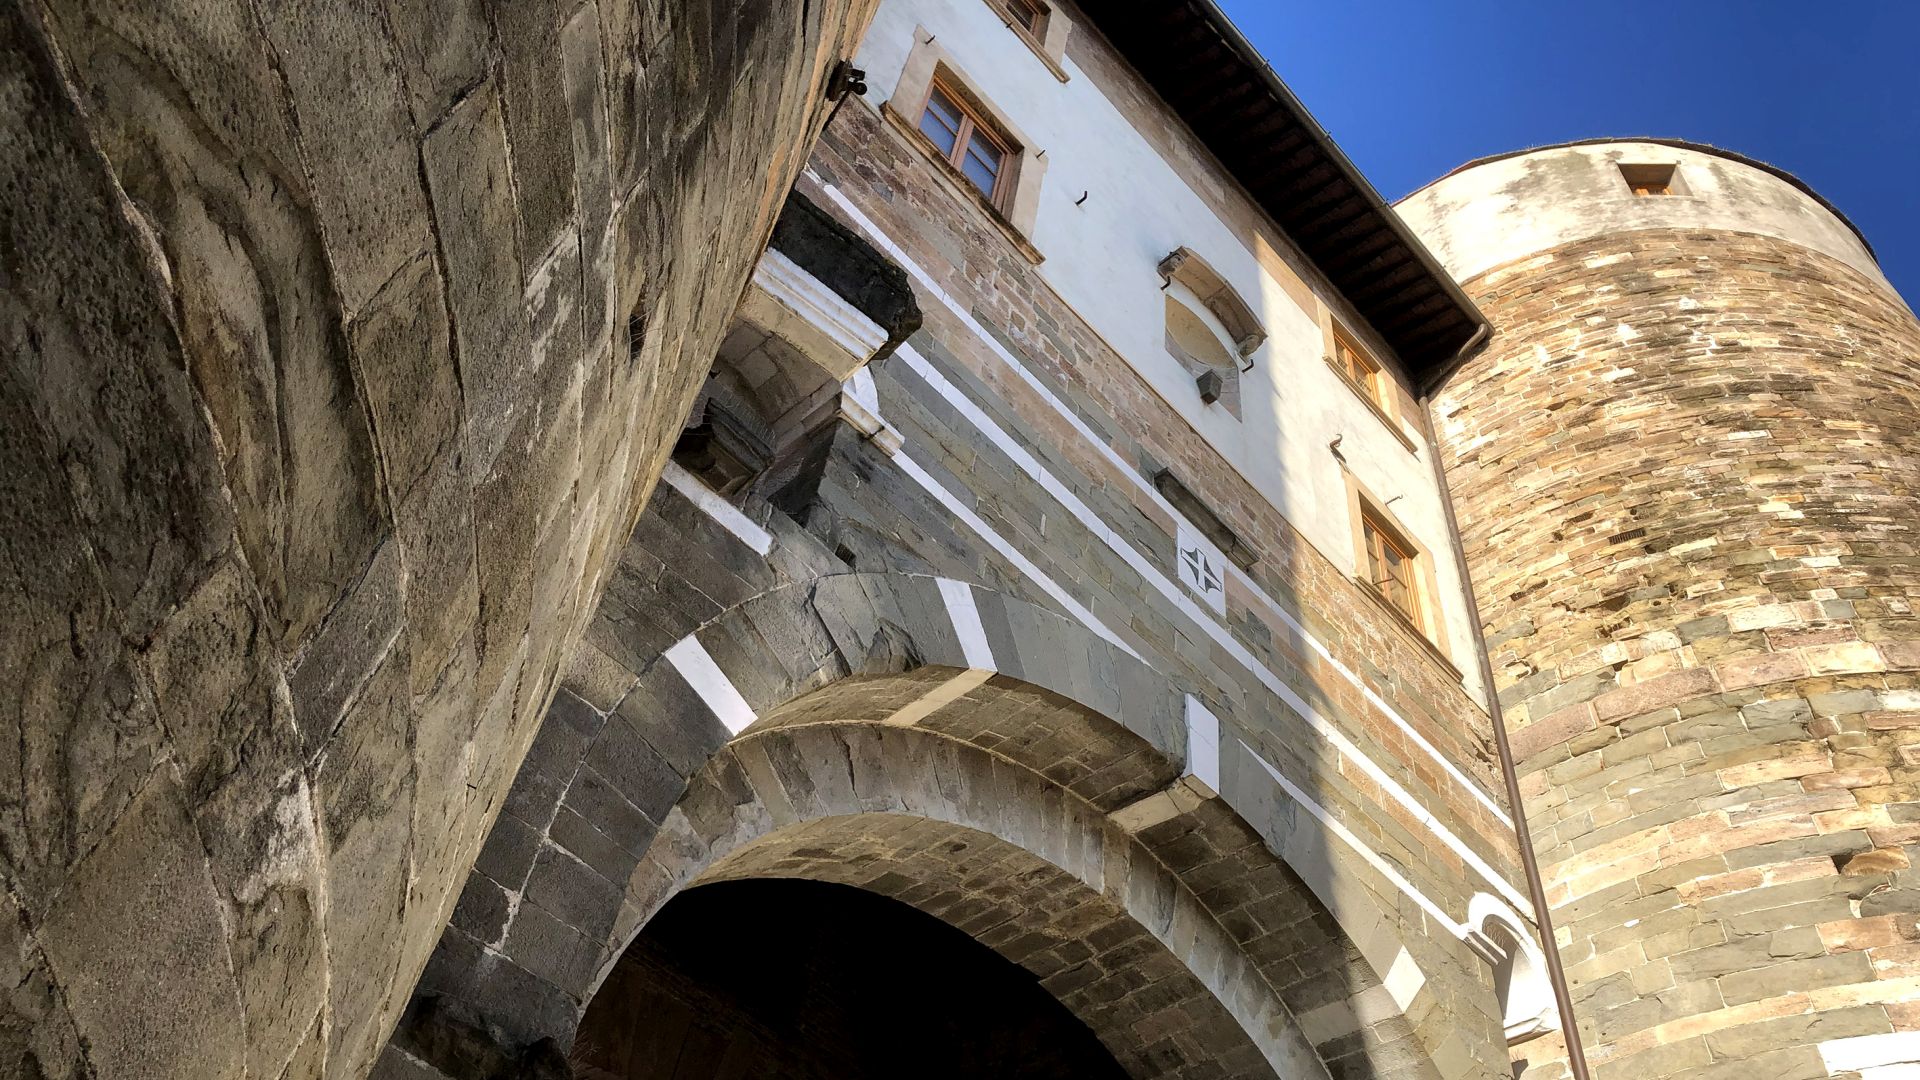 Porta San Gervasio des murailles médiévales de Lucques